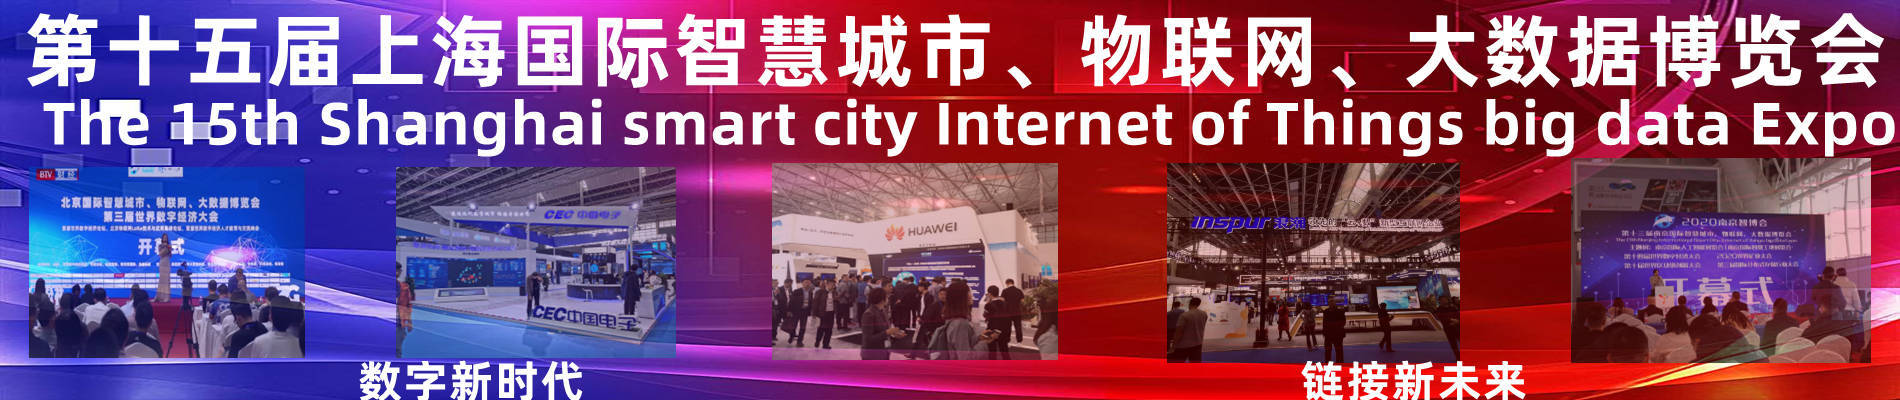 023上海智博会|第十五届上海智慧城市|物联网|大数据博览会"